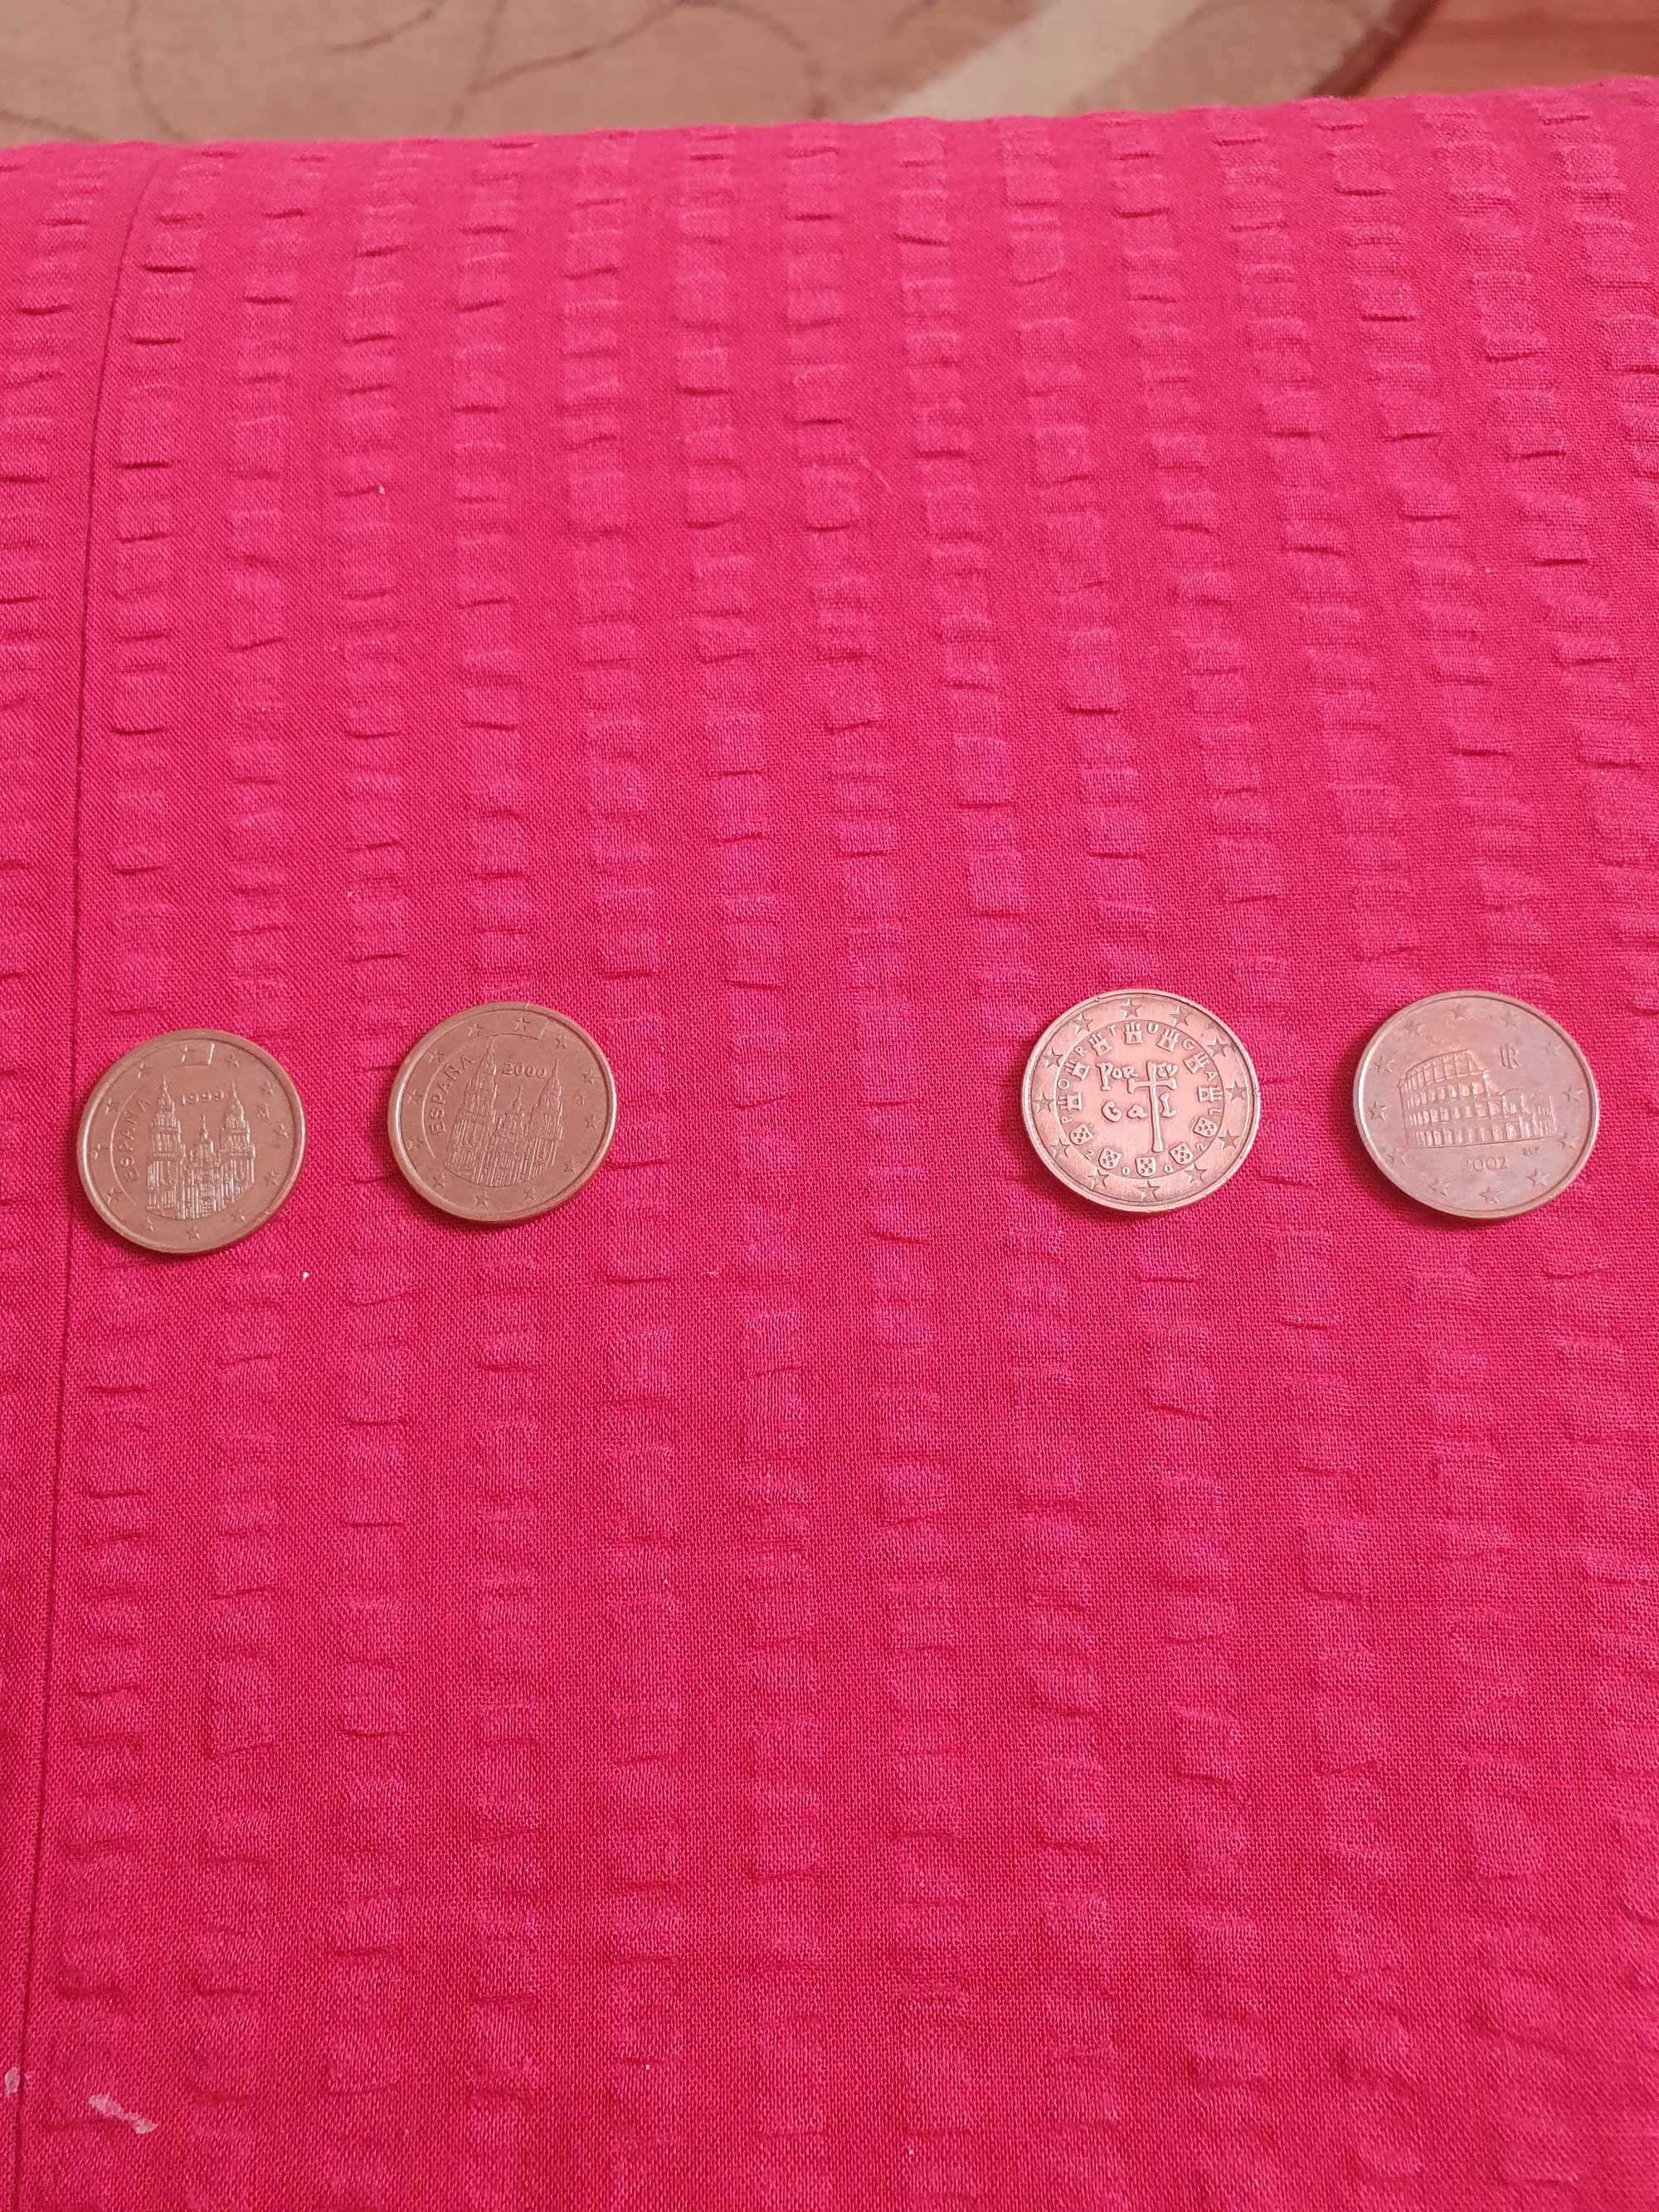 Lot monede de 5 euro cent